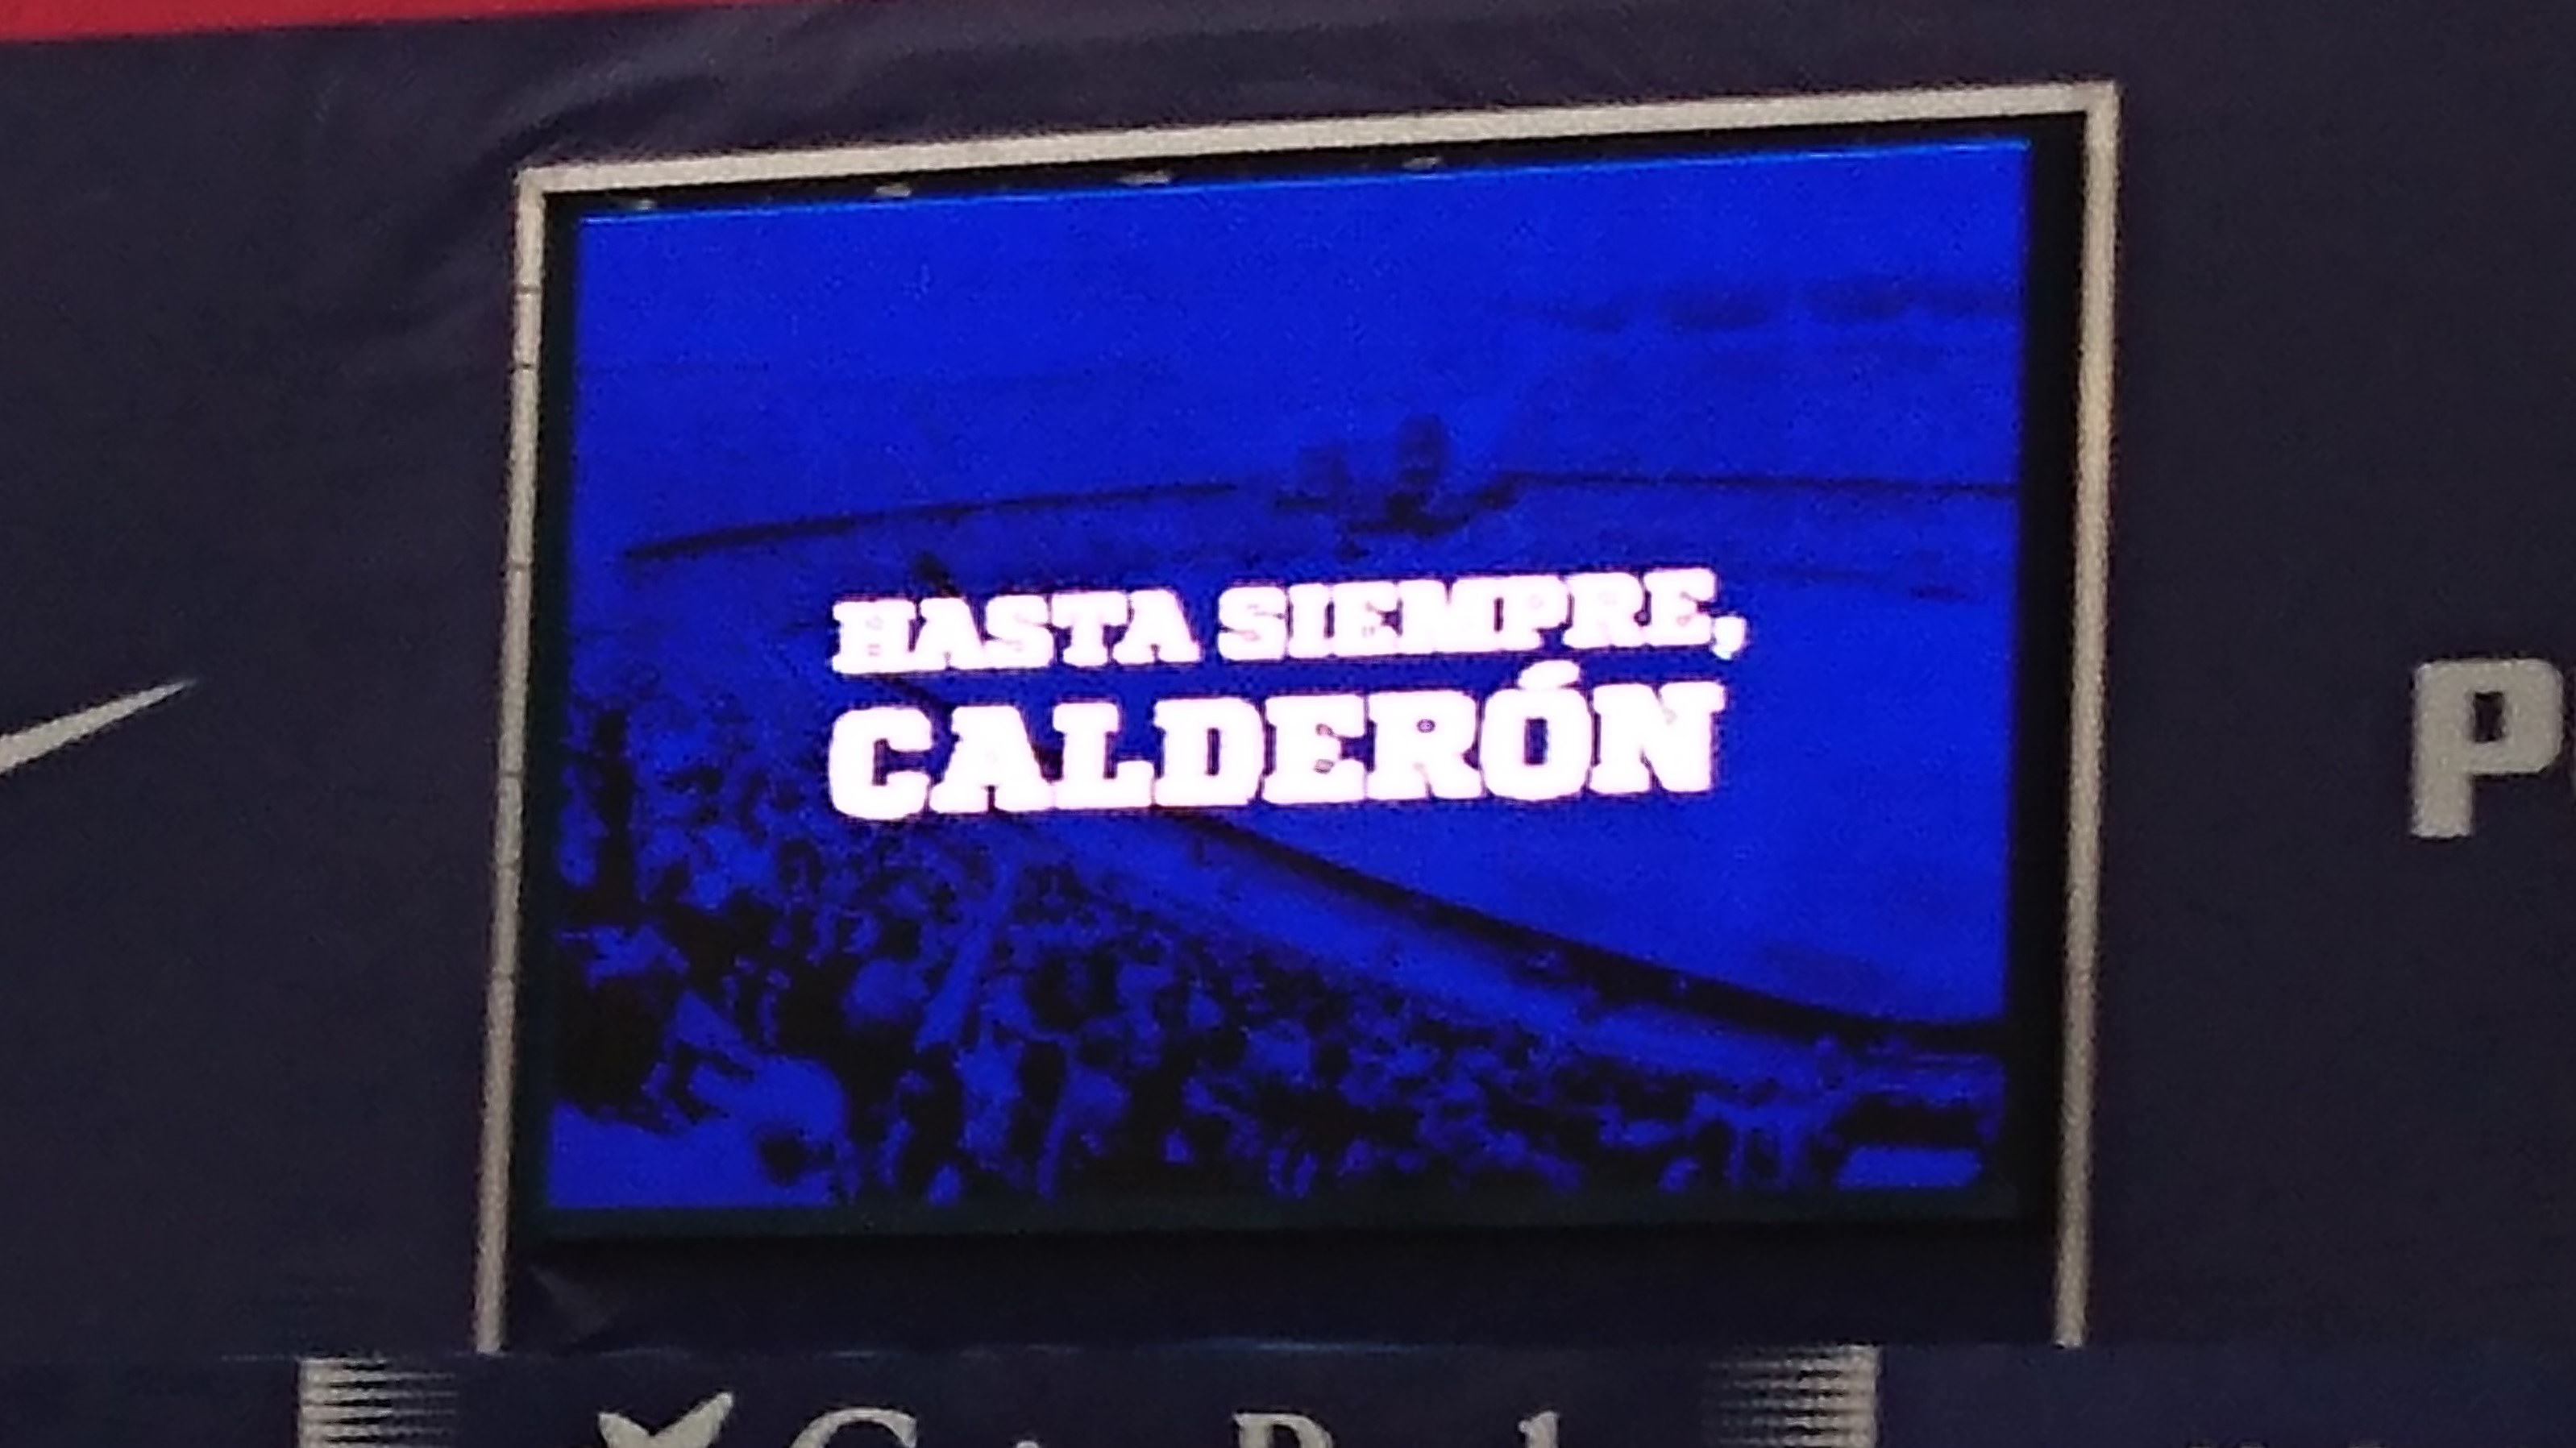 ¡Los rojiblancos nunca olvidaremos los grandes momentos vividos en el ya histórico Vicente Calderón!